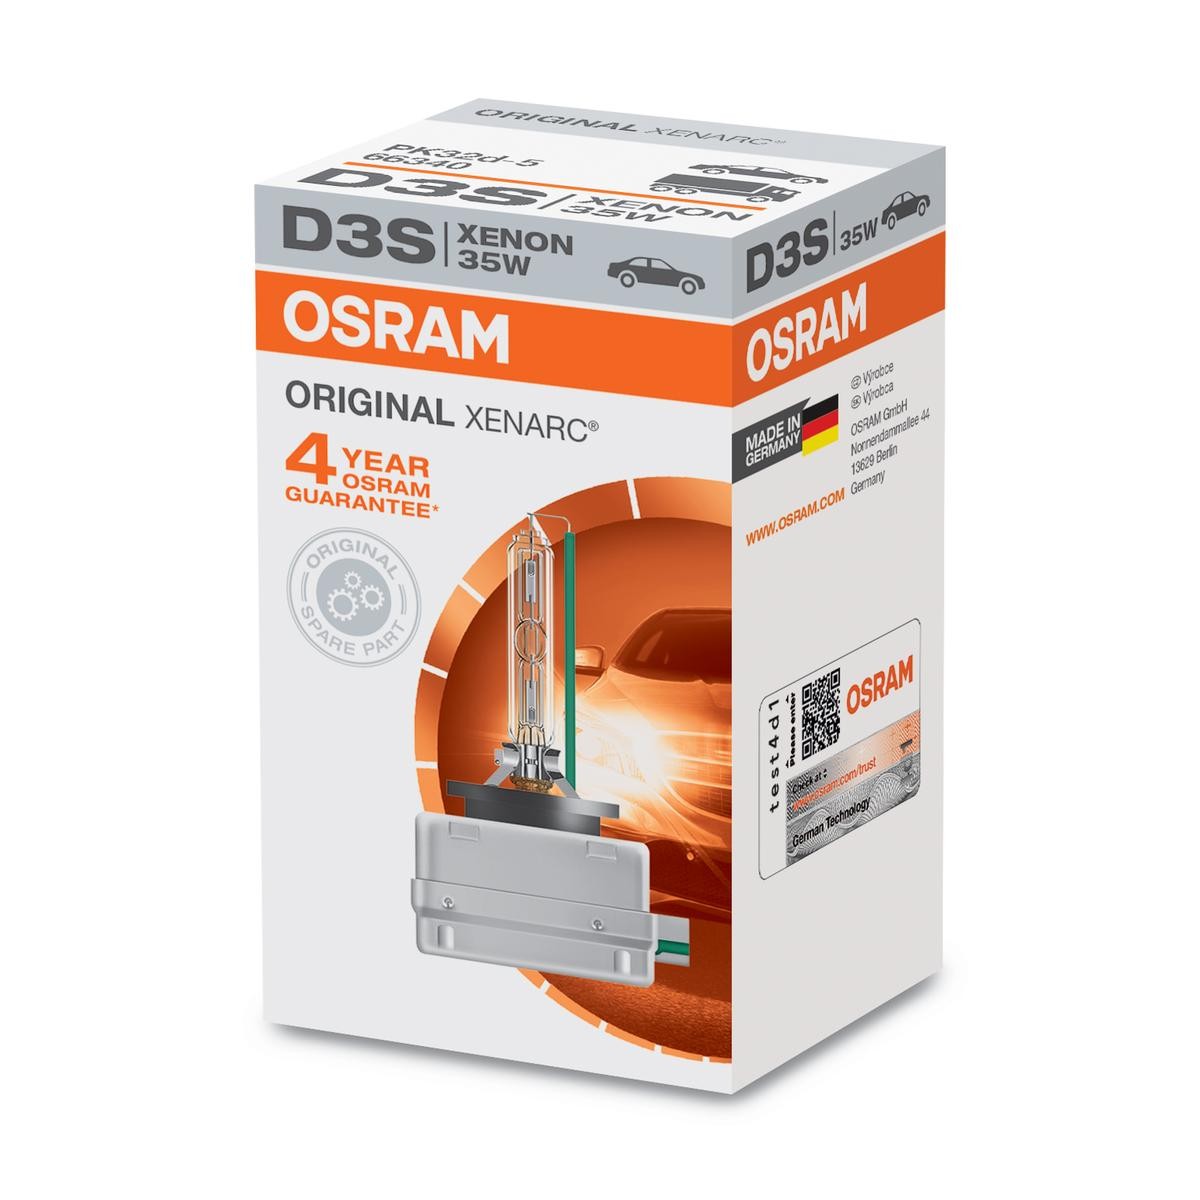 66340 OSRAM XENARC ORIGINAL D3S 42V 35W PK32d-5, 4100K, Xénon Ampoule,  projecteur longue portée